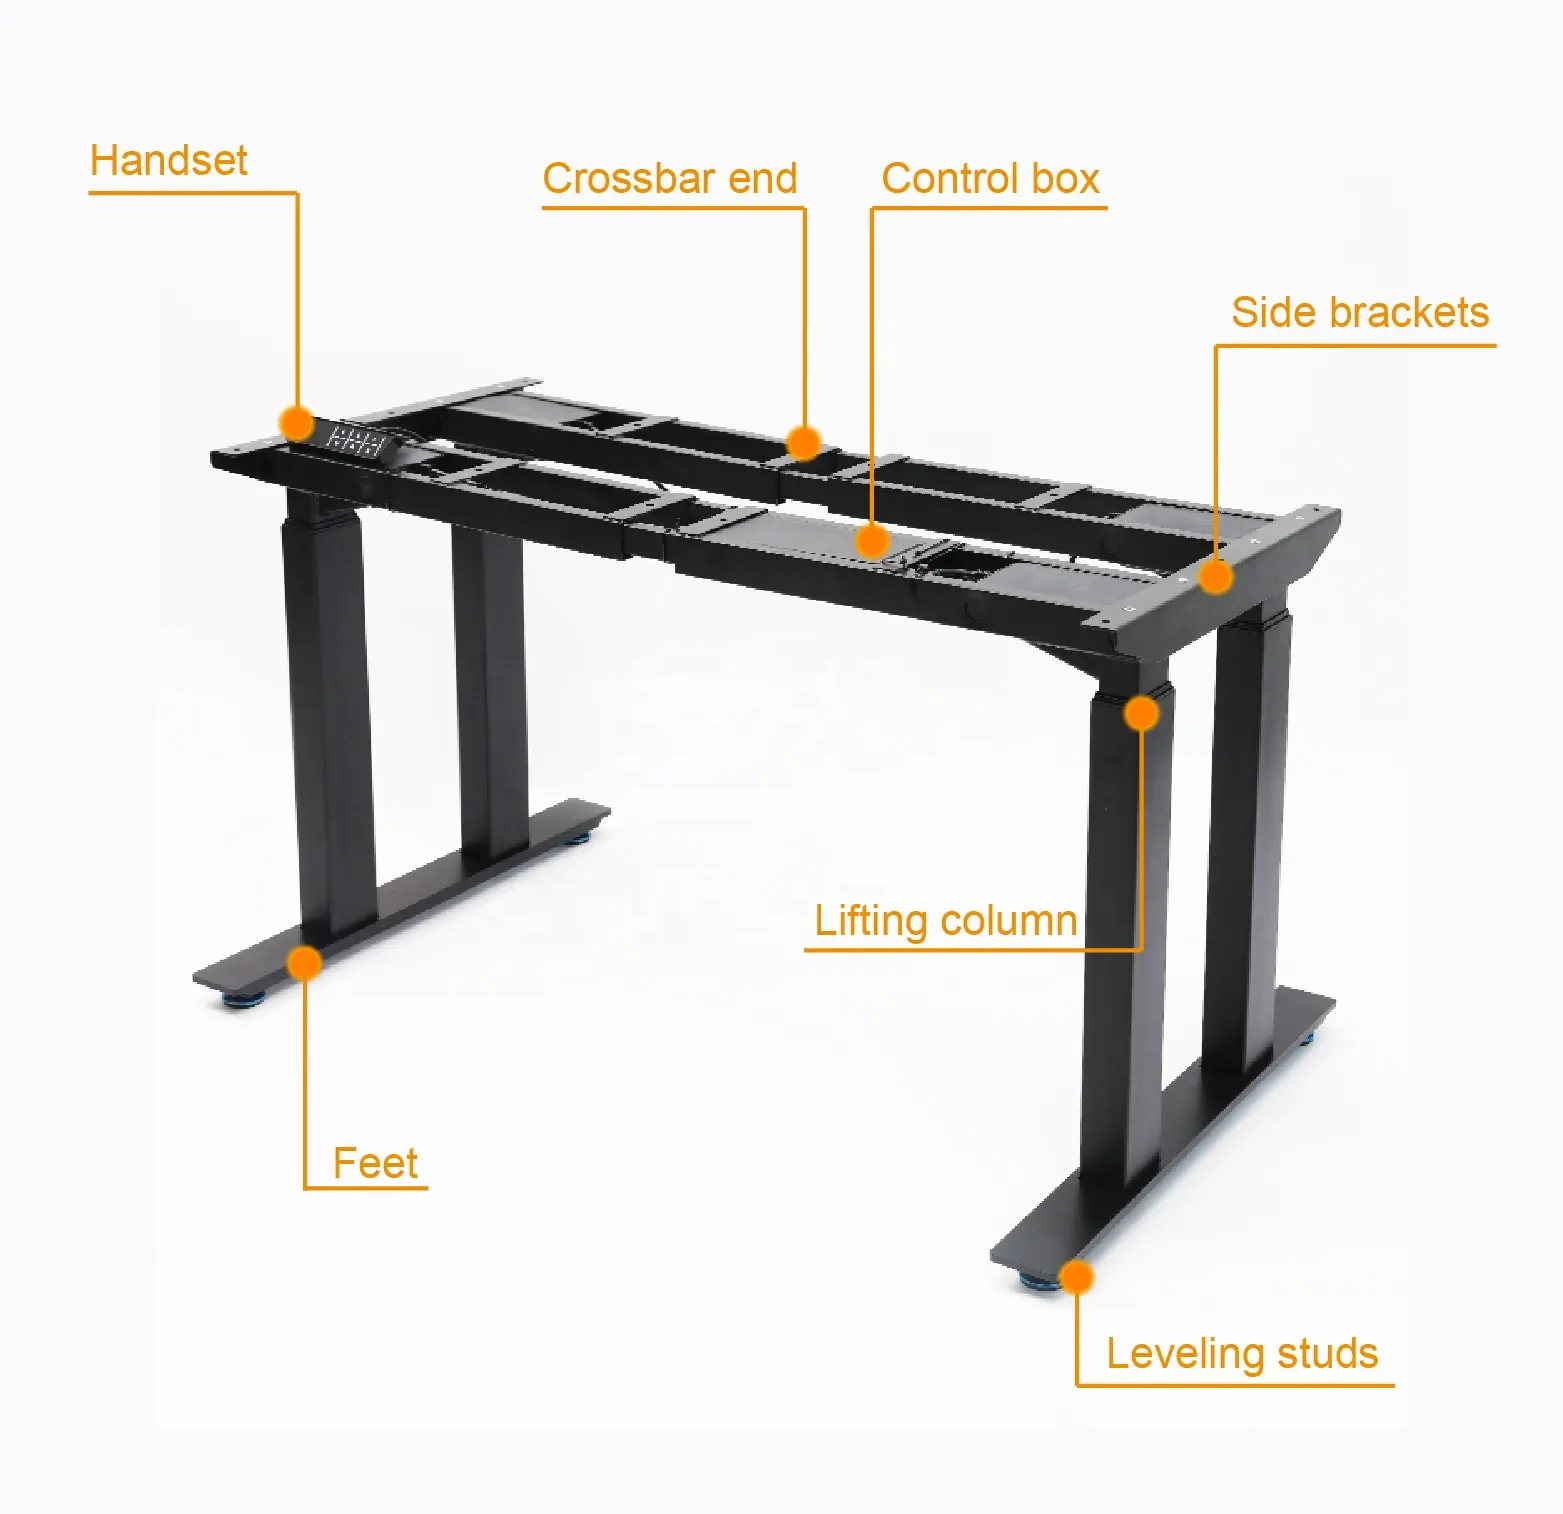 Elektrikli ayakta masa büyük boy güçlü yük taşıyan yüksekliği ayarlanabilir kaldırma masası